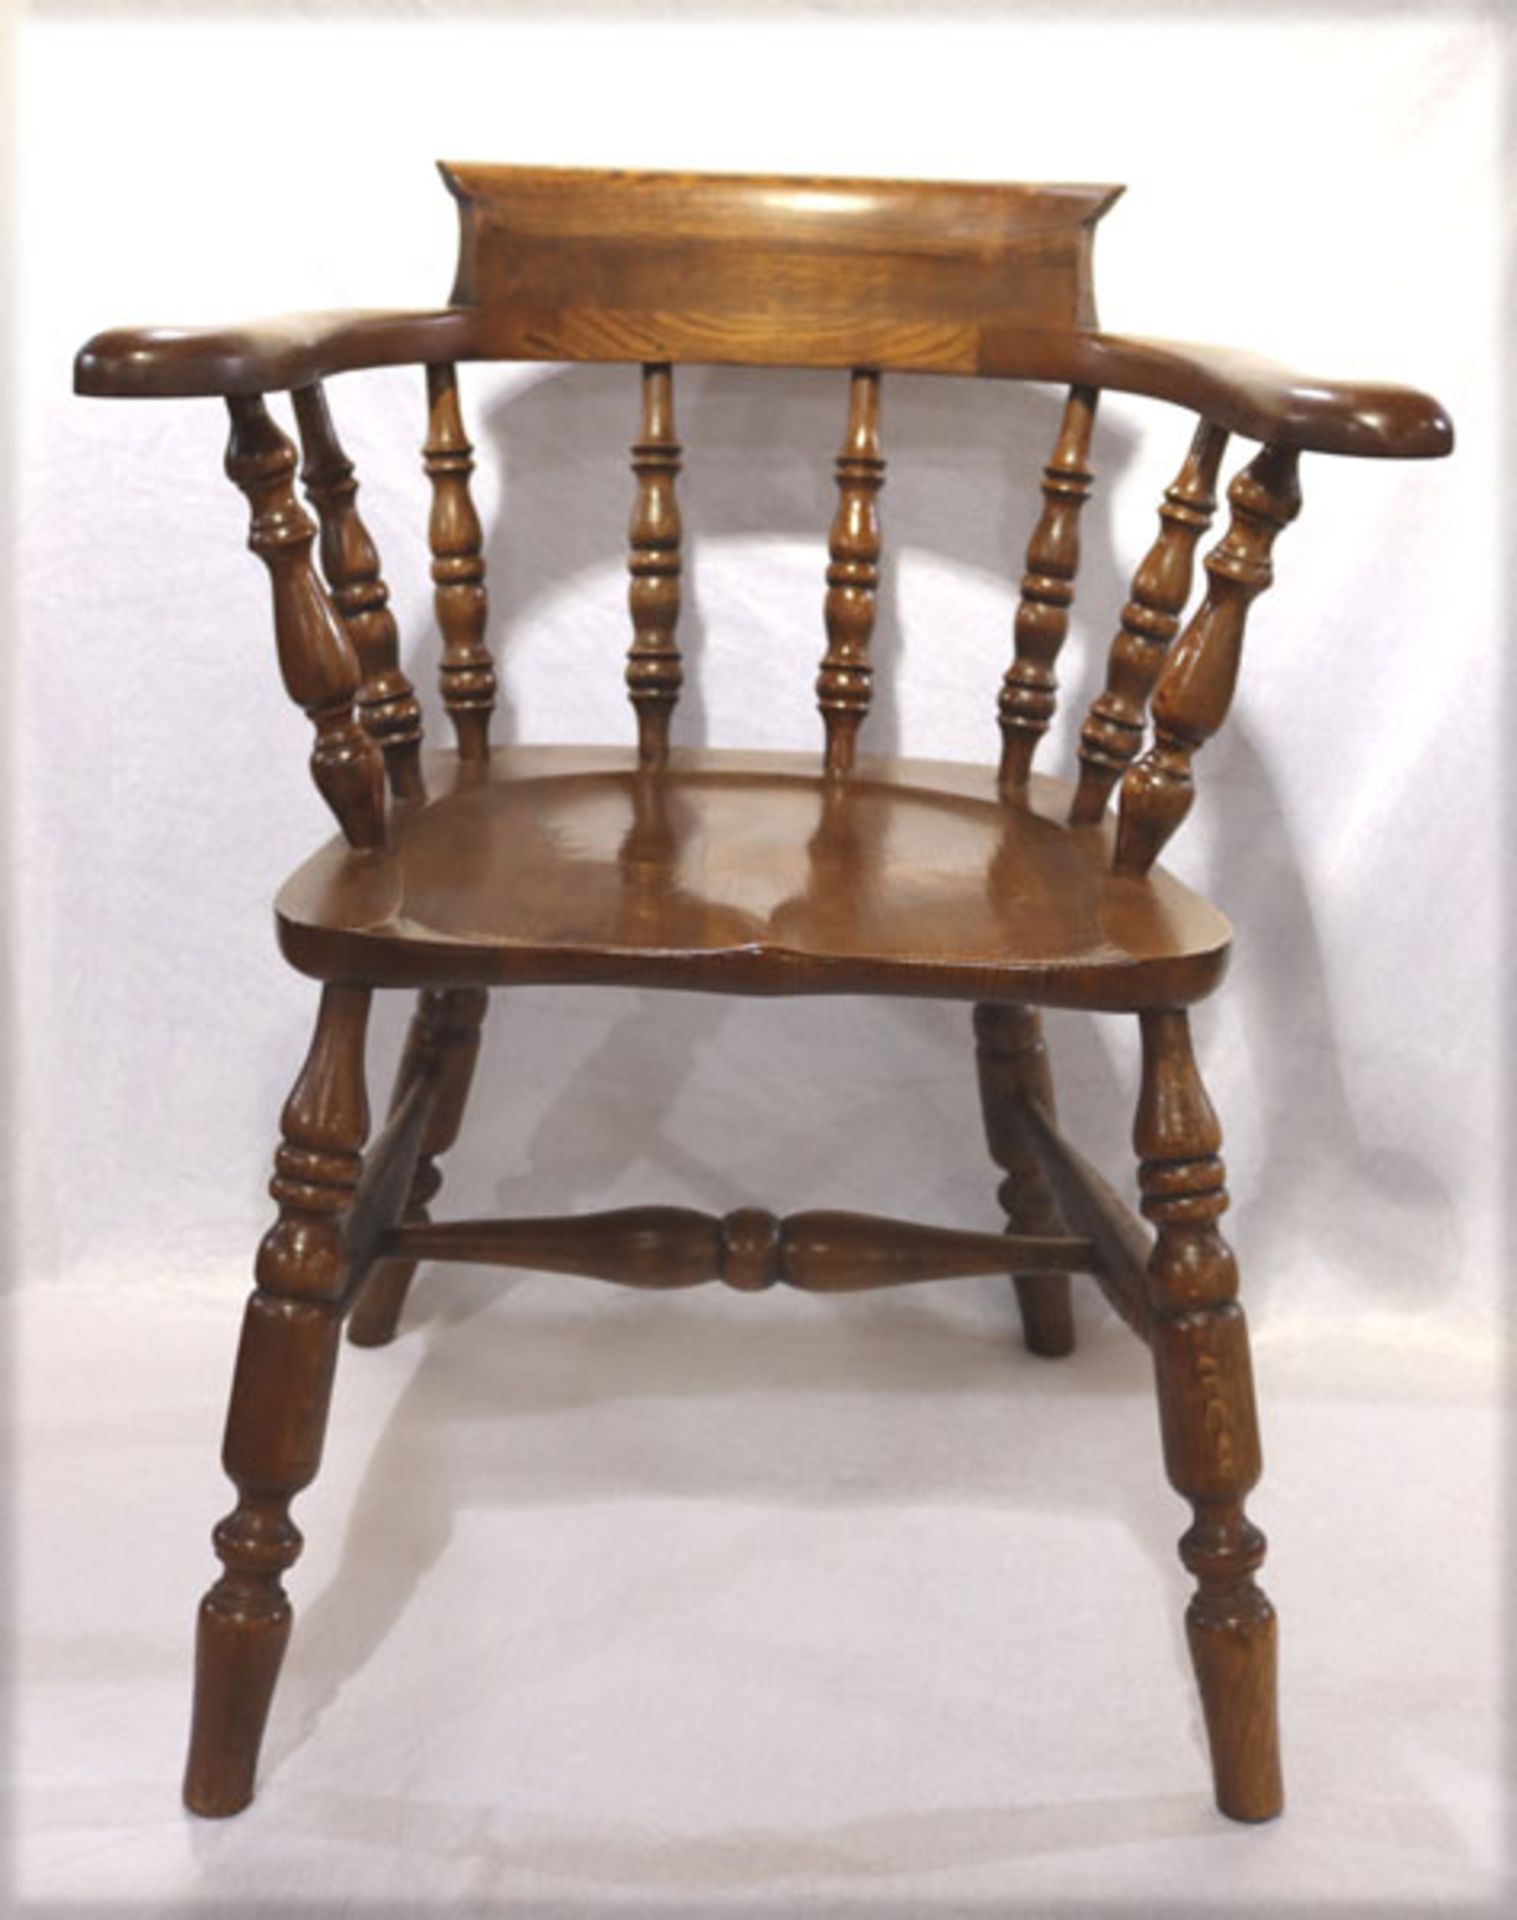 Holz Stuhl, gedrechselte Lehne und Beine, dunkel gebeizt, H 80 cm, B 68 cm, T 40 cm,